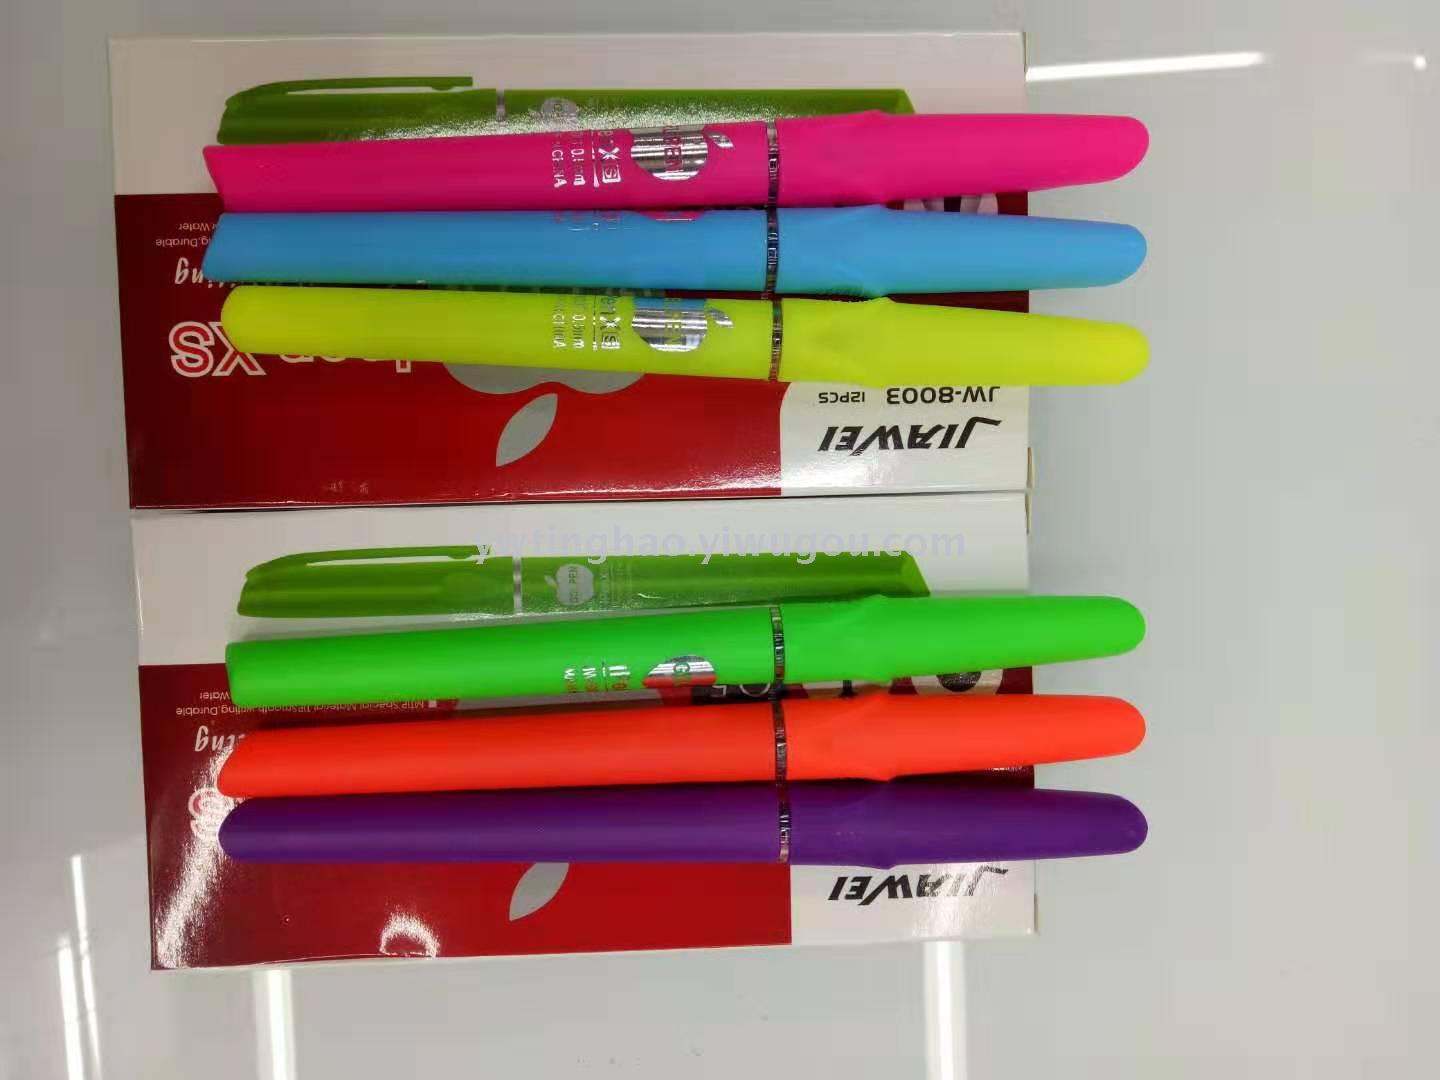 中性笔 中油笔 荧光色笔杆中性笔 苹果中性笔 学习用品 办公用品